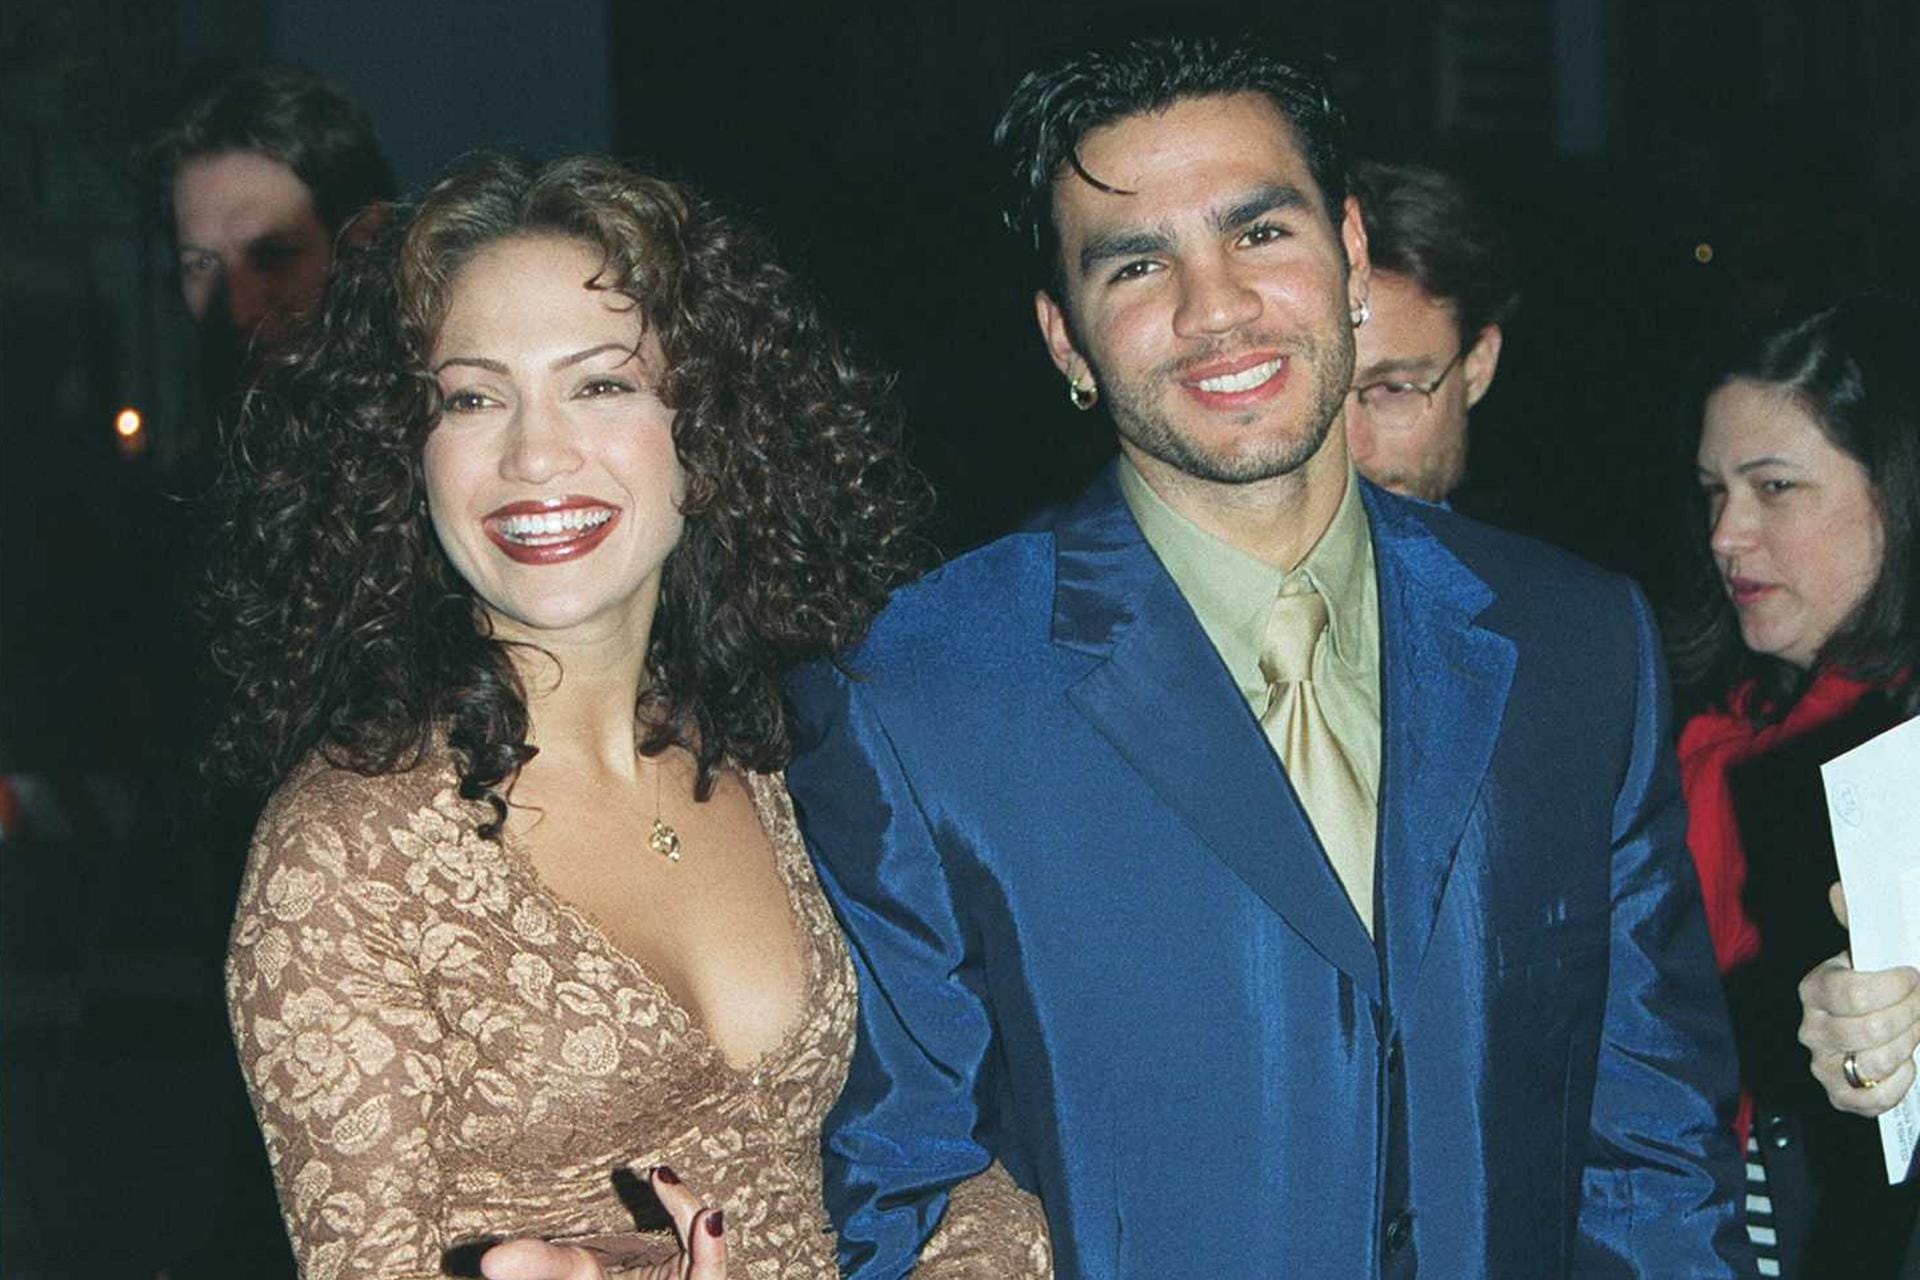 Ojani Noa: Es war Jennifer Lopez' erste Ehe. Von 1997 bis 1998 waren der Kellner und die Sängerin verheiratet bevor ihre Scheidung im Rosenkrieg endete.